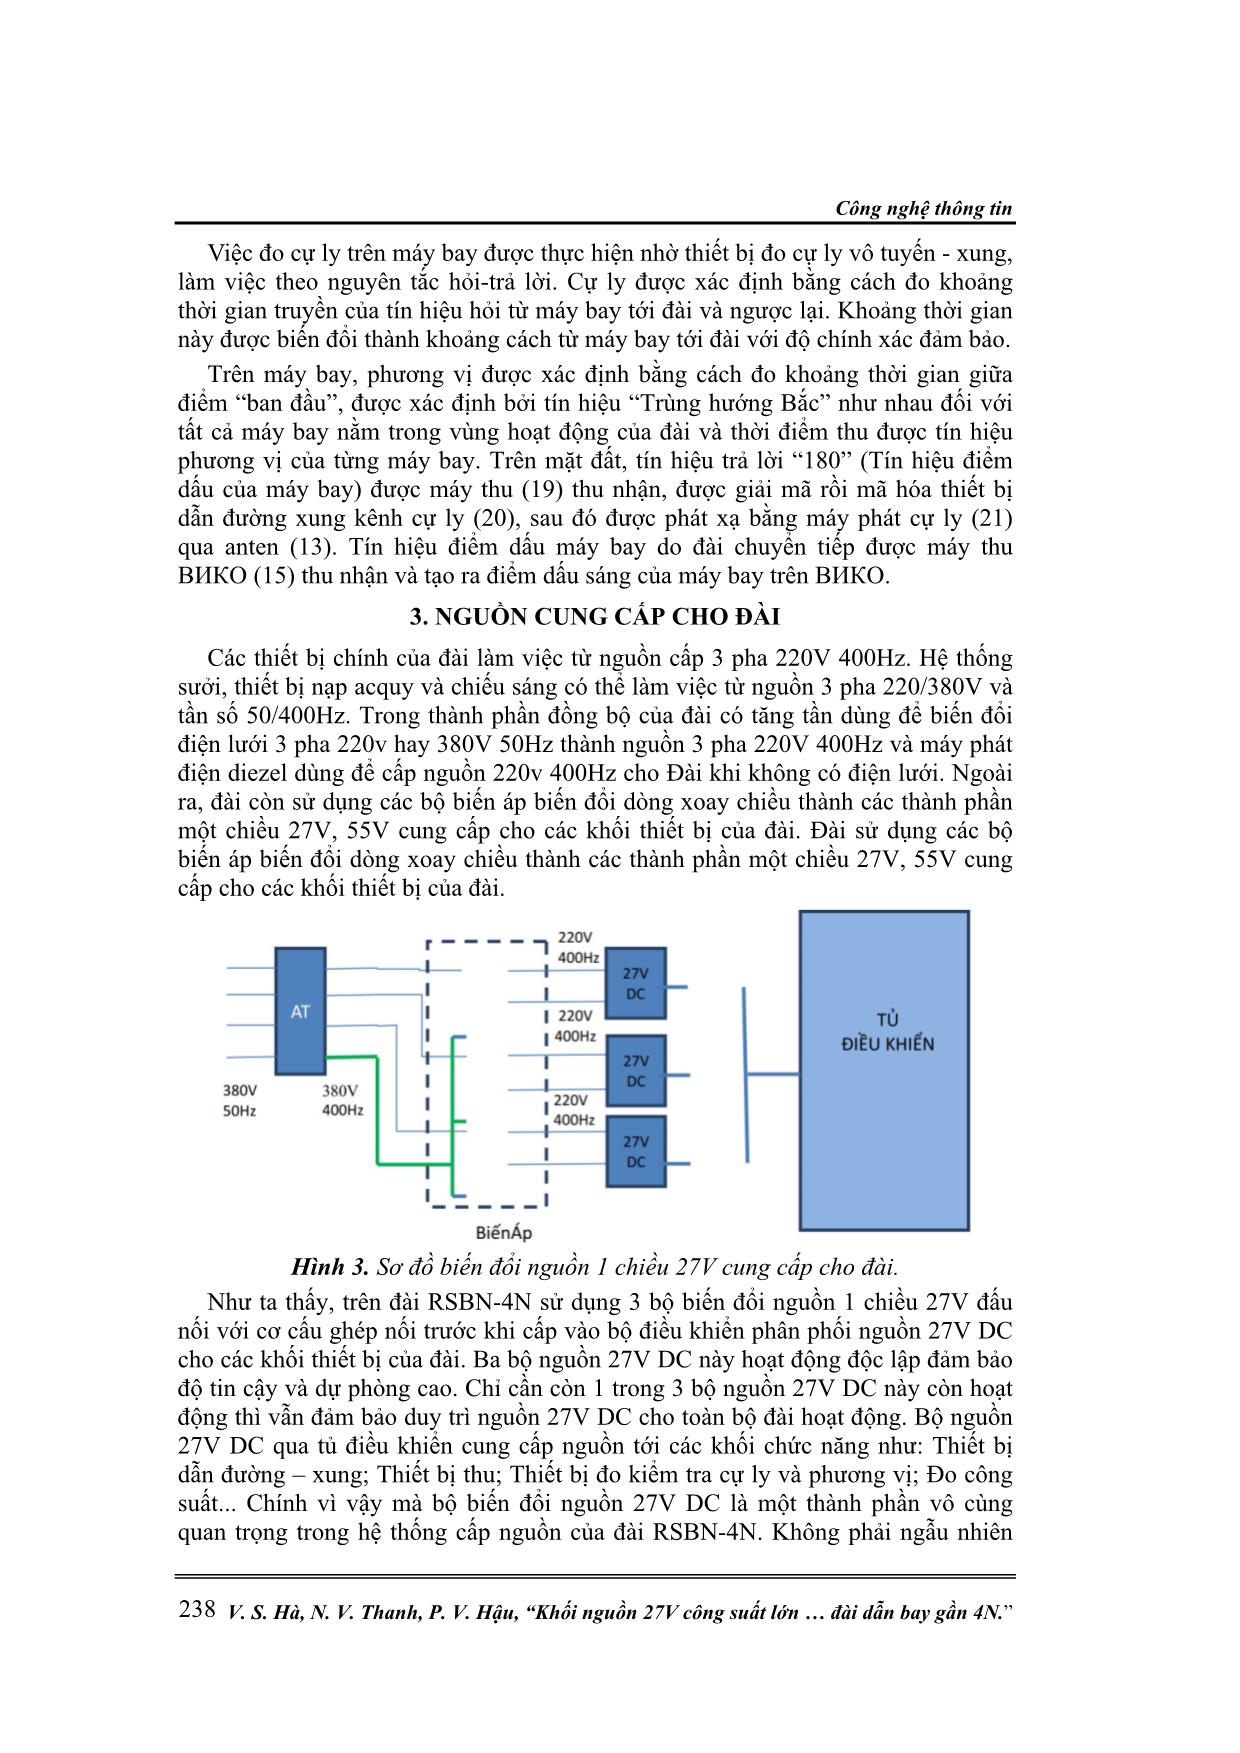 Khối nguồn 27V công suất lớn MAA300-1C27CYH trong khối xử lý trung tâm của đài dẫn bay gần 4N trang 3